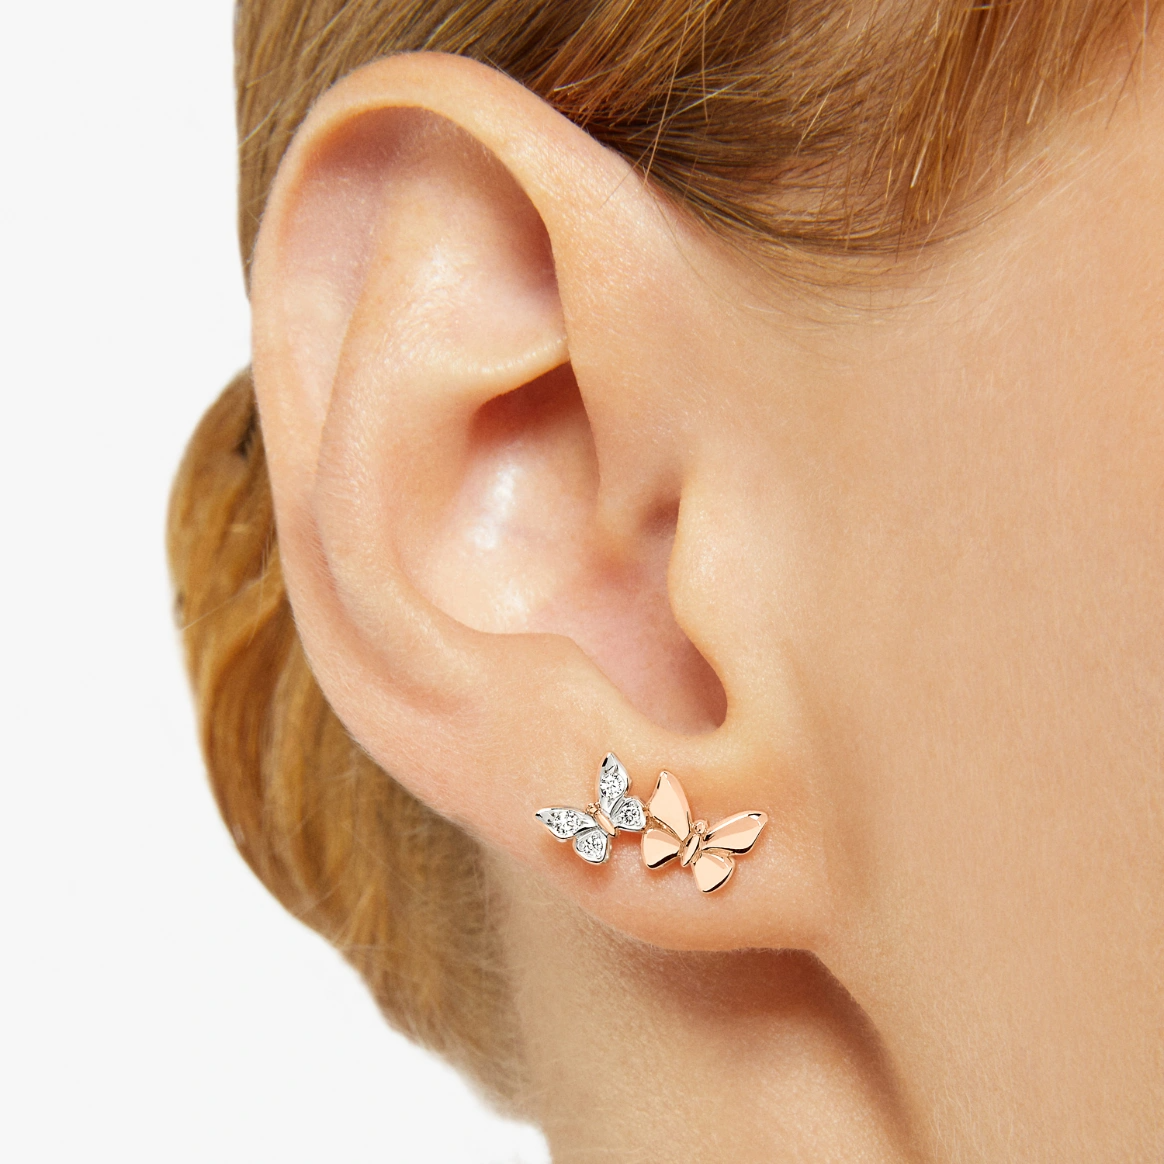 Dodo Butterfly Earring in 9k Rose Gold with Diamonds - Orsini Jewellers